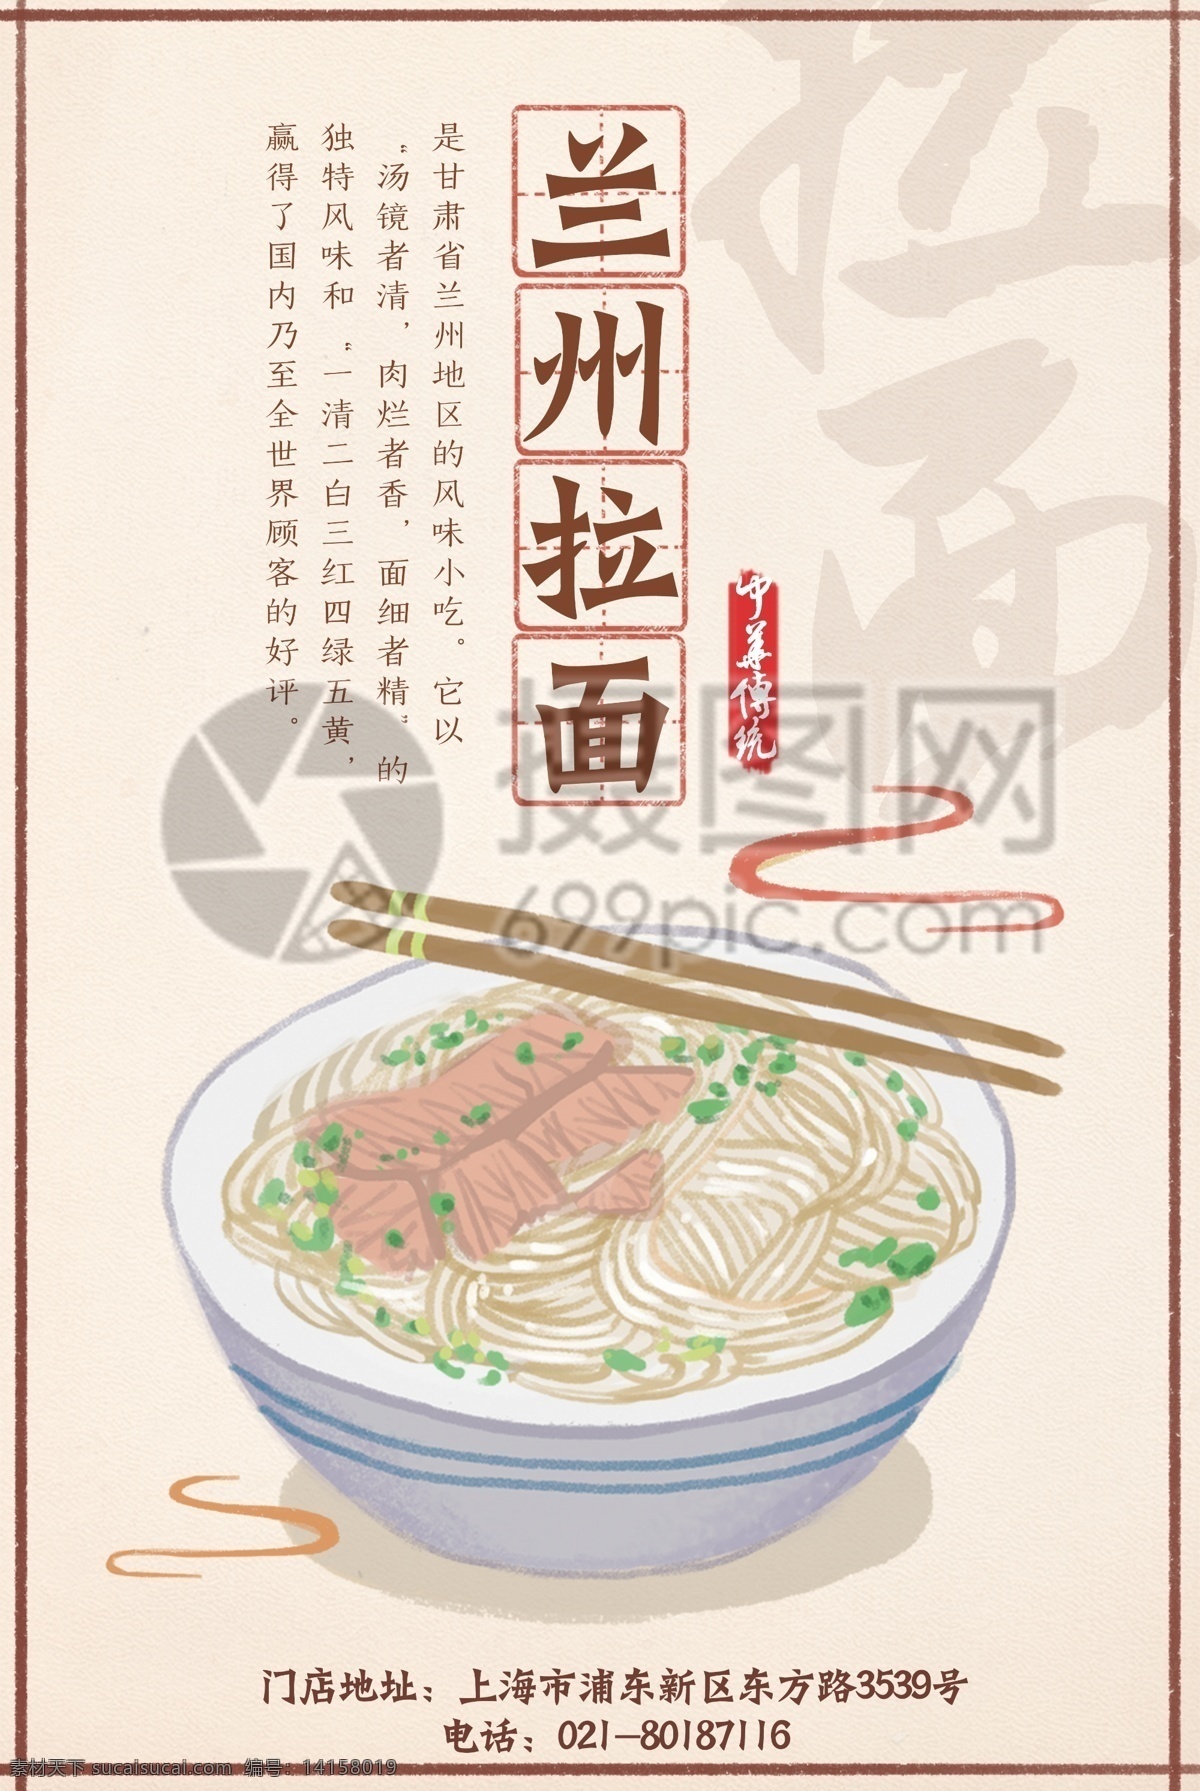 传统 美食 兰州 拉面 宣传海报 中华传统 传统美食 兰州拉面 面食 海报